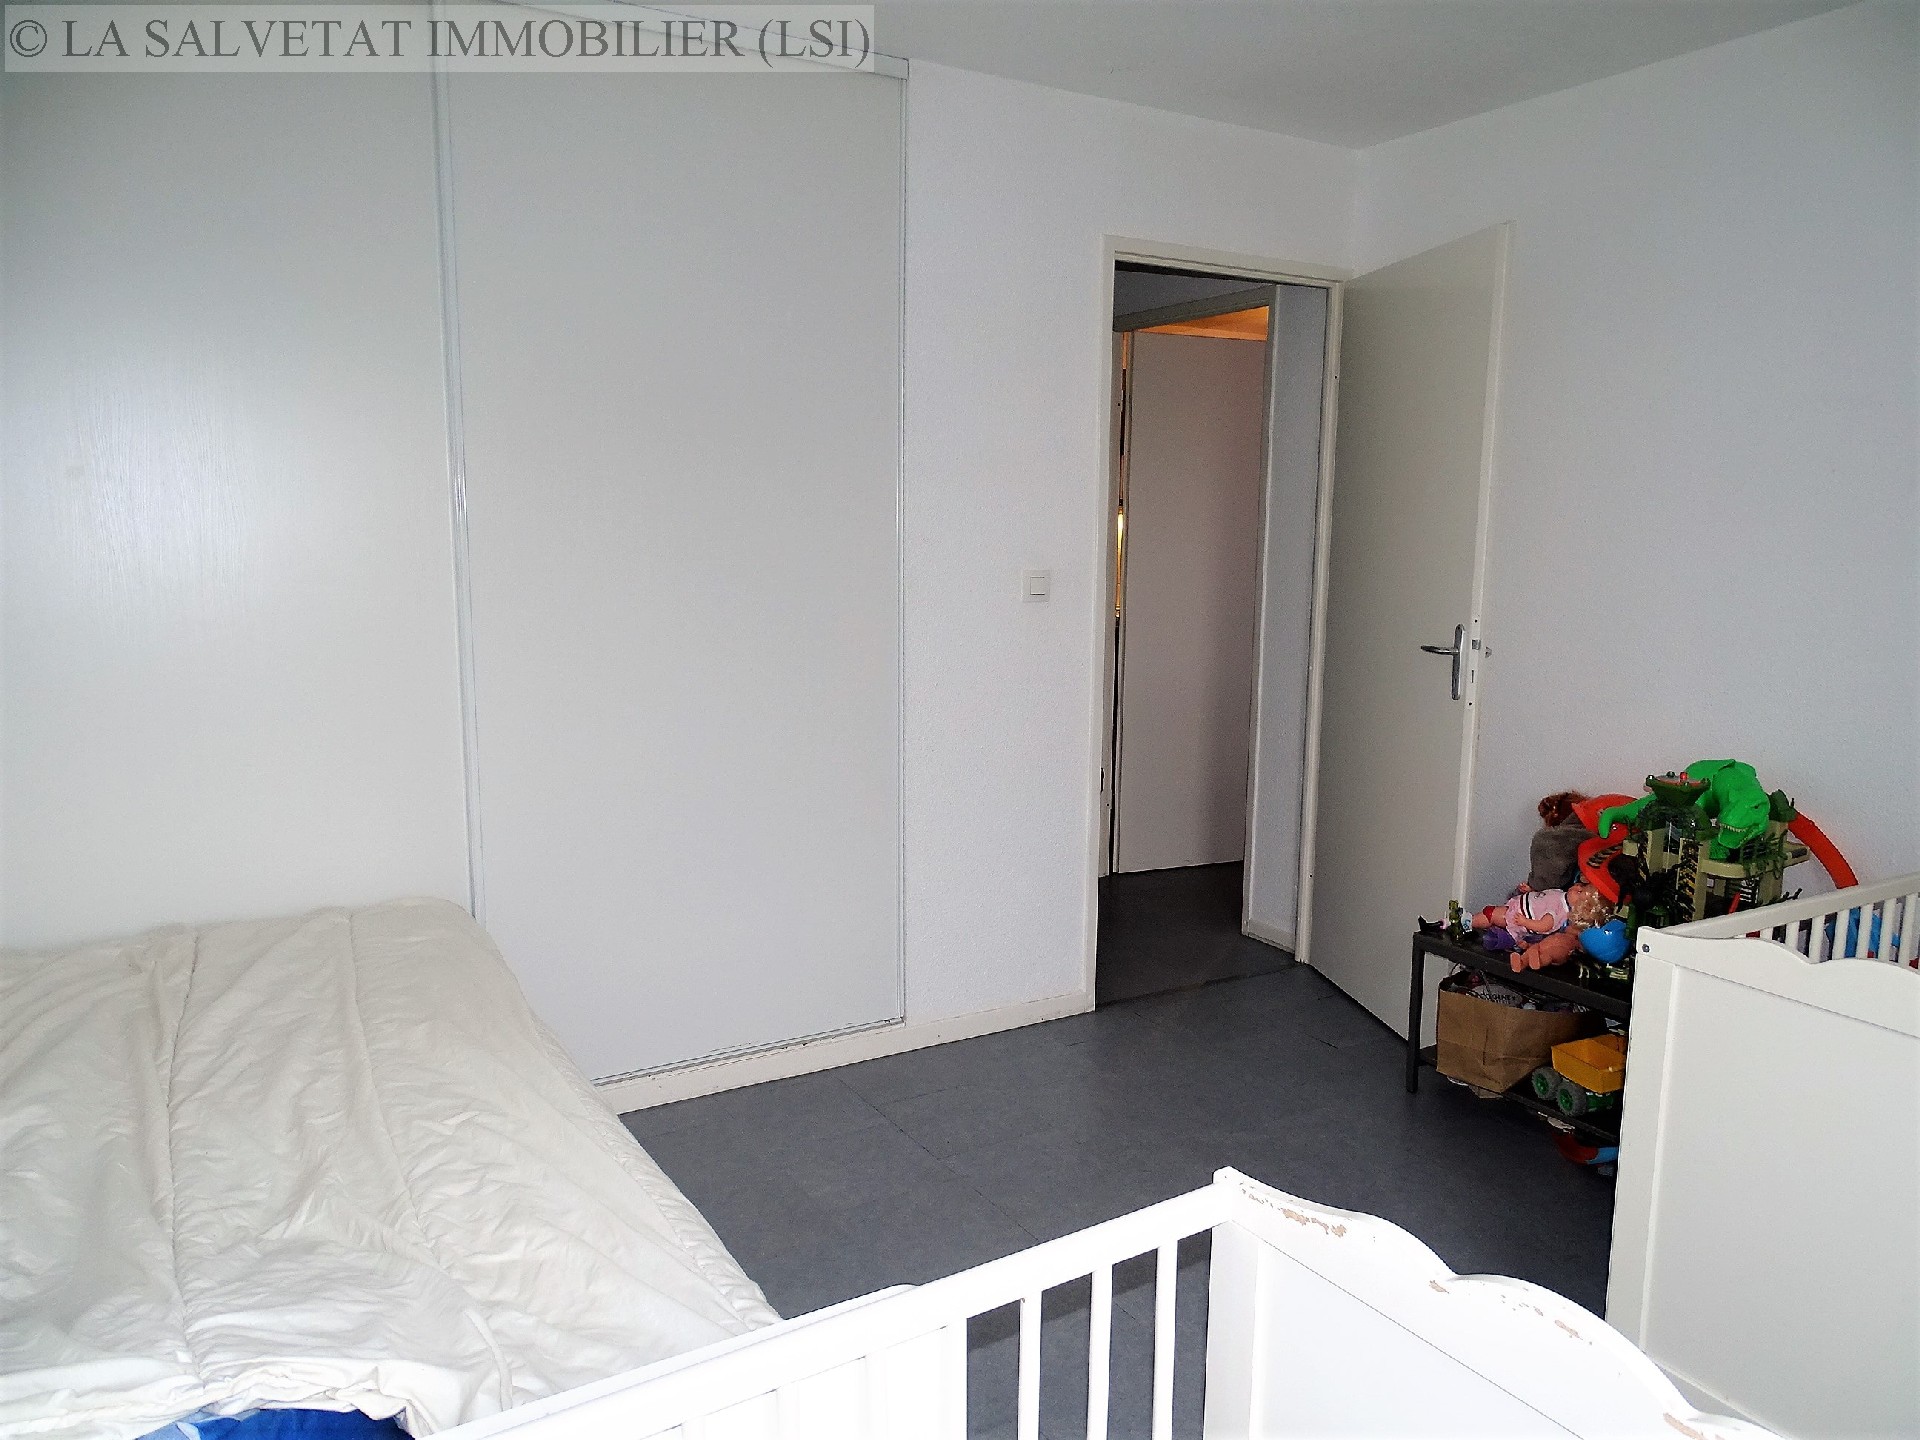 Vente appartement - LA SALVETAT ST GILLES<br>43,25 m², 2 pièces